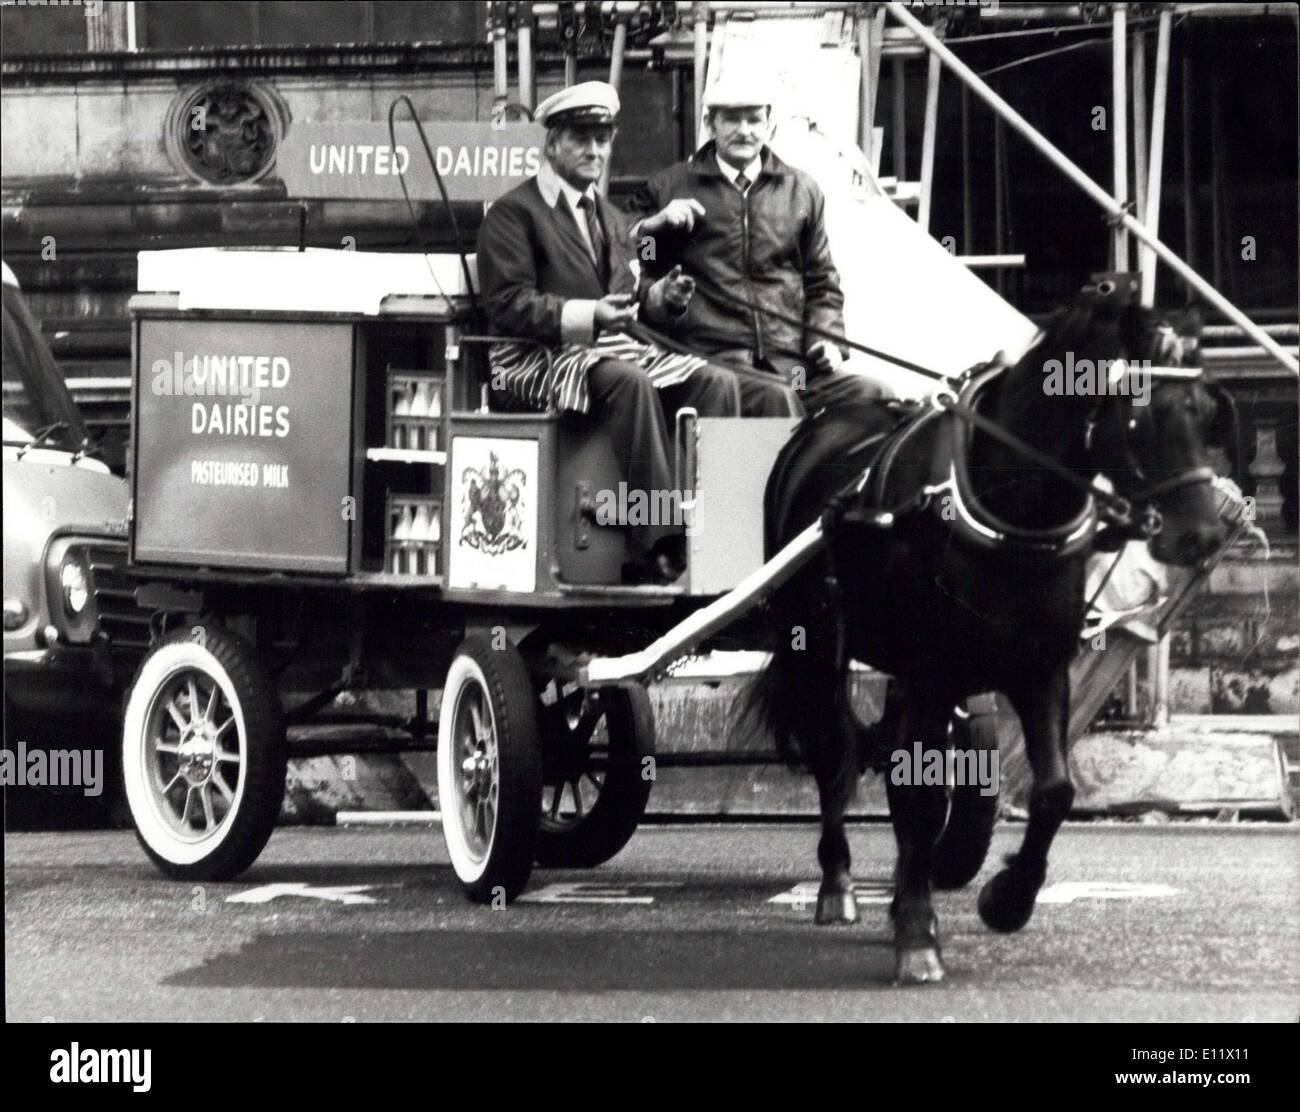 7. Oktober 1980 - spät Reise für United Dairies Horse-Drawn Float: Diese Purley Typ Float gebaut ca. 1035 und arbeitete mehrere Bereiche von London vor dem Ende seiner Lebensdauer ca. 1957 an der Fulham Abschieben der United Molkereien, obgleich es fortfuhr, bis Mitte der 1960er Jahre als eine Show-Fahrzeug verwendet werden. Wir bei einer Auktion durch das Wissenschaftsmuseum in 1979 gekauft und restauriert wurde, von der Wartungsabteilung Elektrofahrzeug von UD bei Harlenden. Heute machte es seine letzte Reise, da es das Science Museum, auf dem Display gehen zurückgegeben wurde Stockfoto